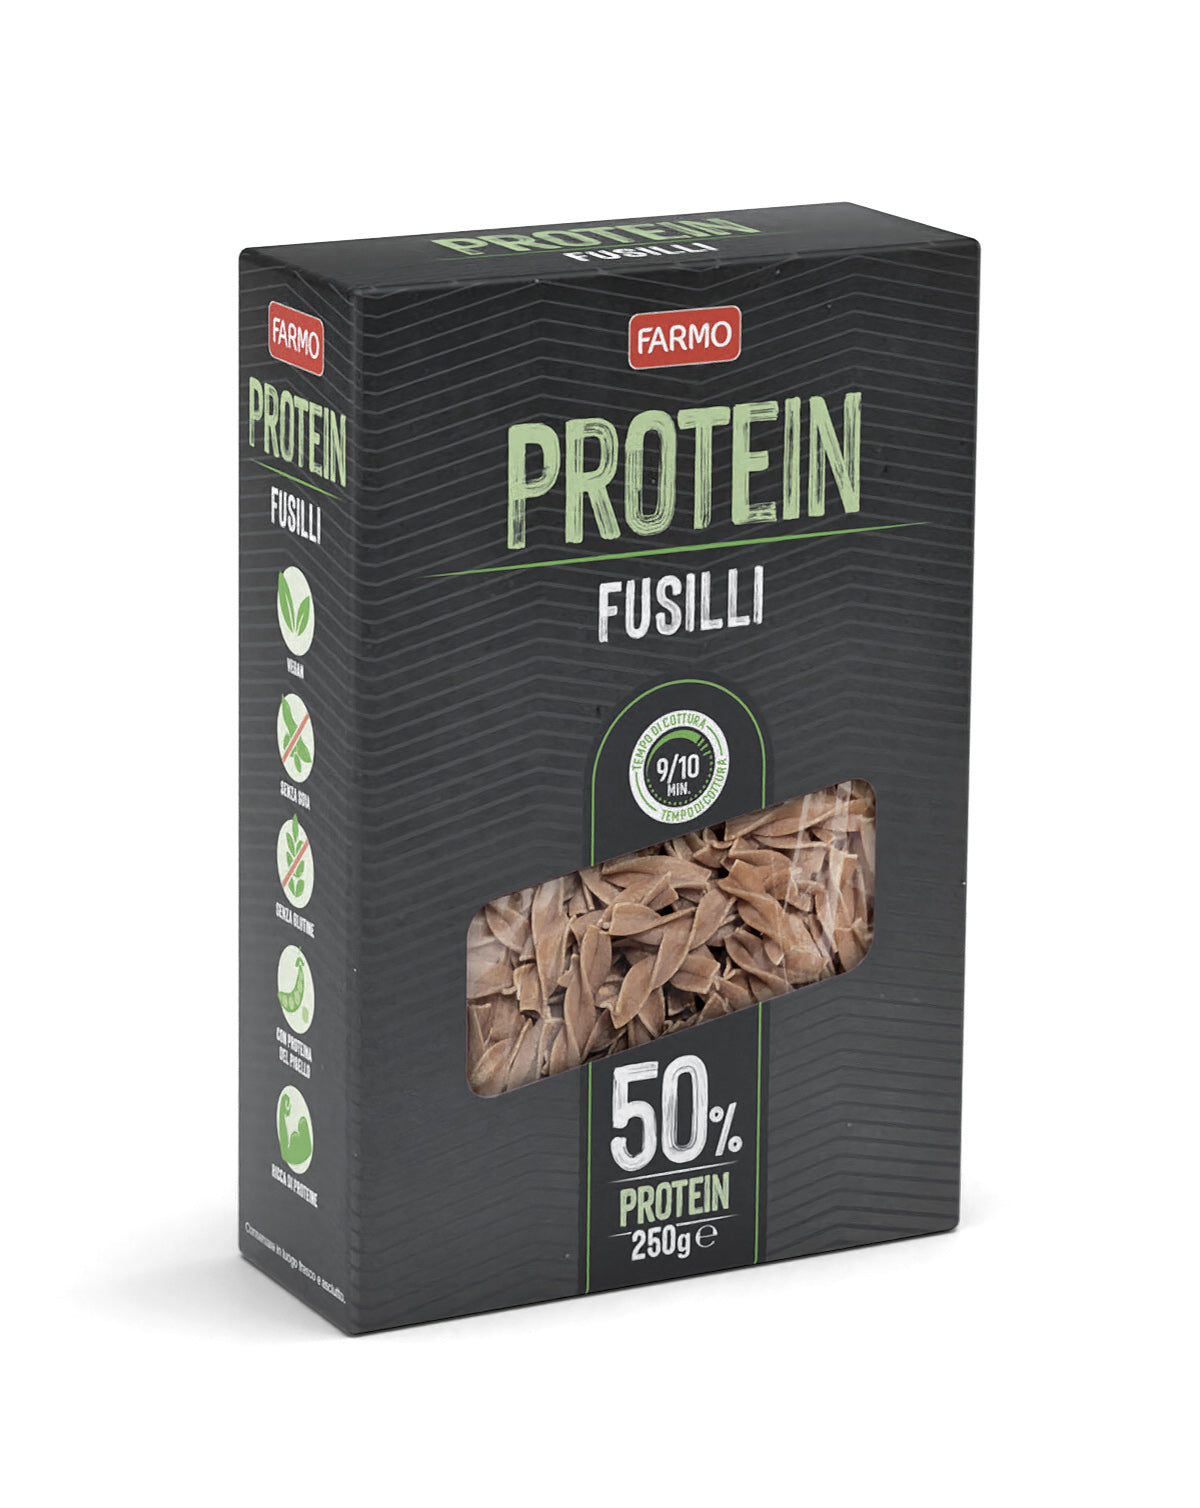 Protein Fusilli